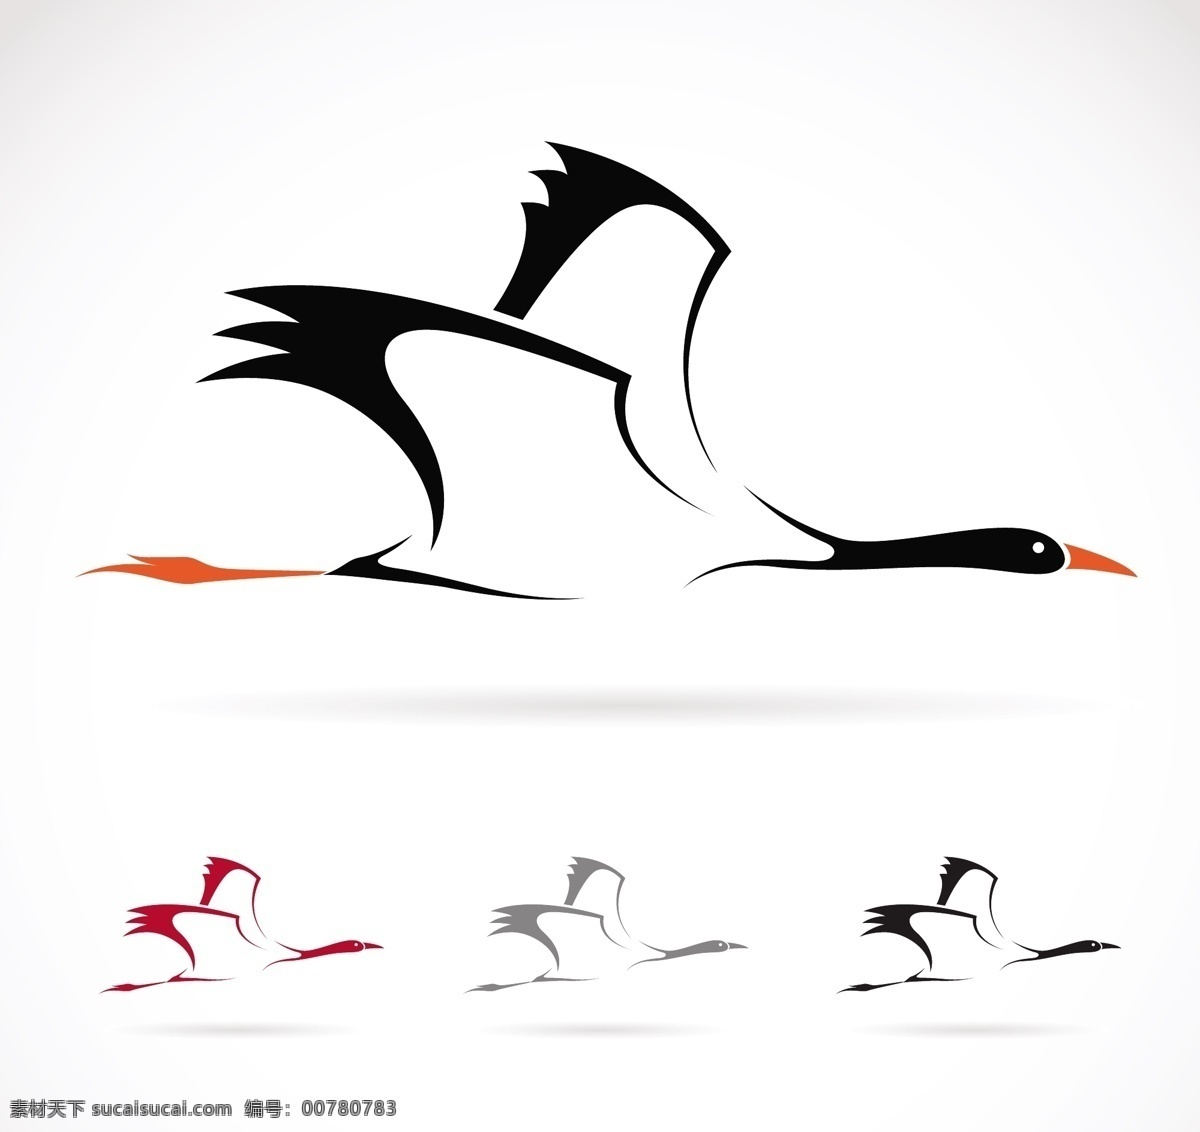 仙鹤 可爱 简 笔画 小 图标 动作 飞翔 设计元素 创意设计 高清 分解 装饰图案 广告装饰图案